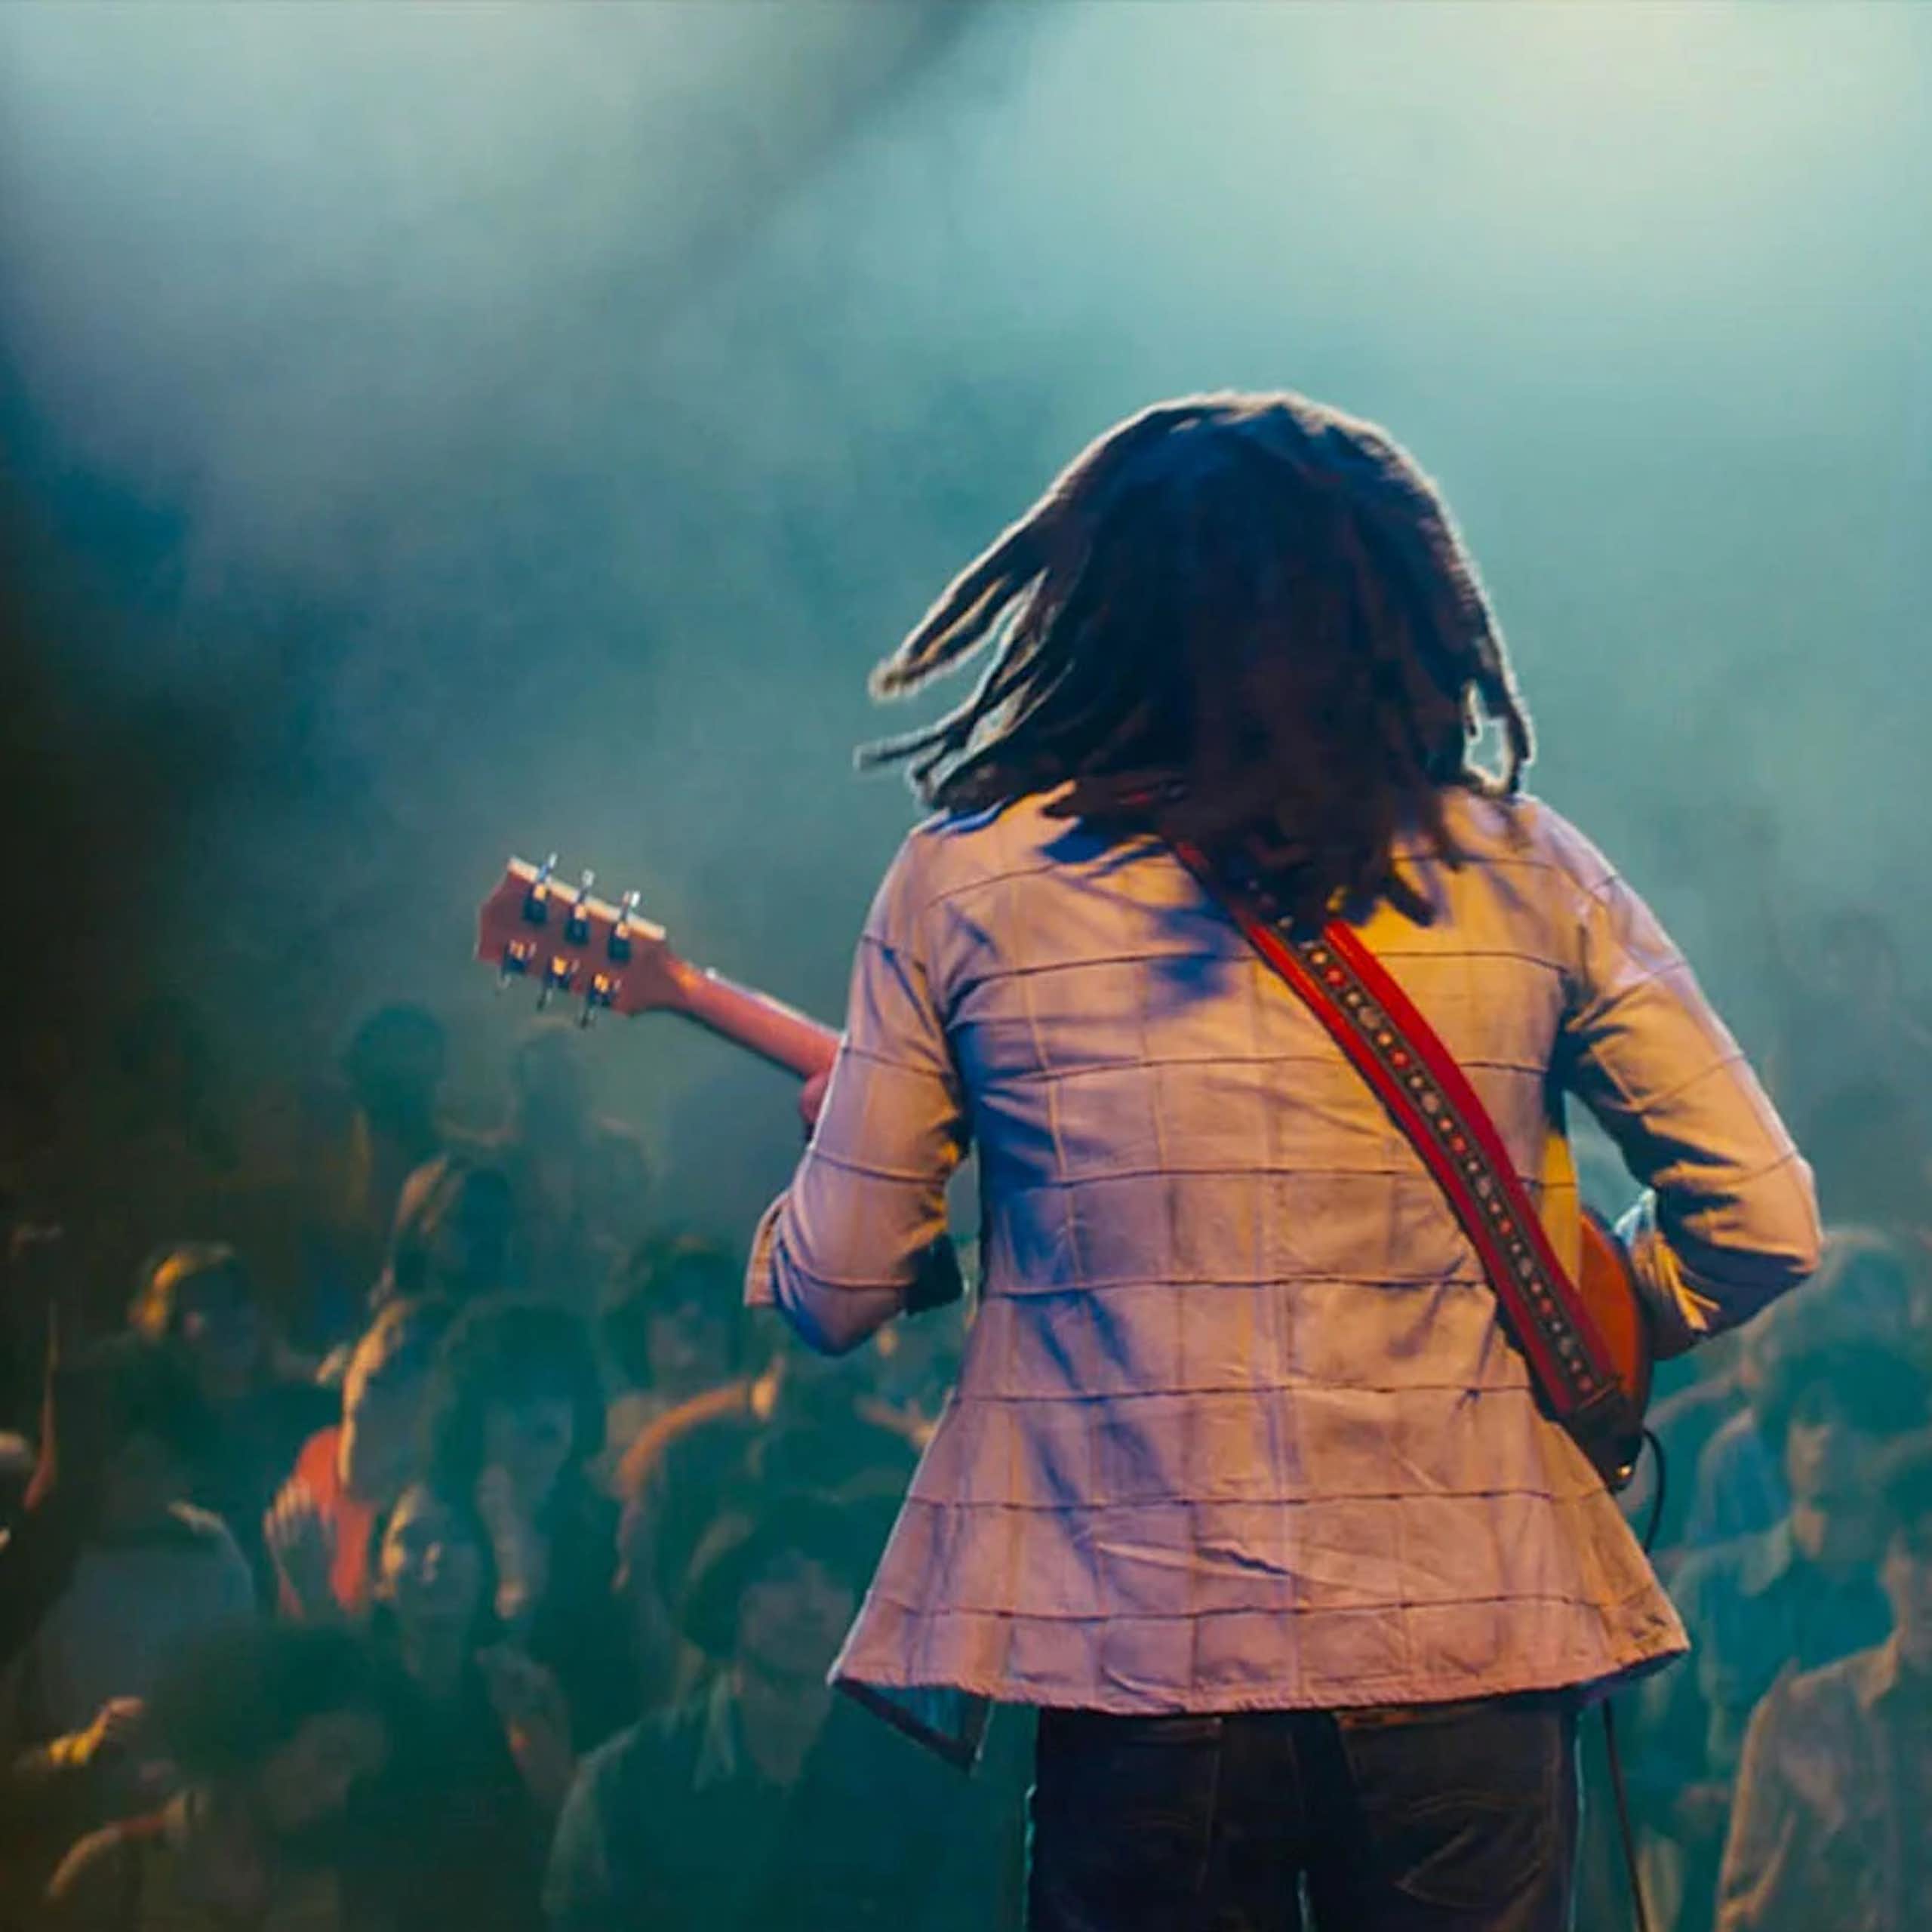 Bob Marley, chantre de l’émancipation